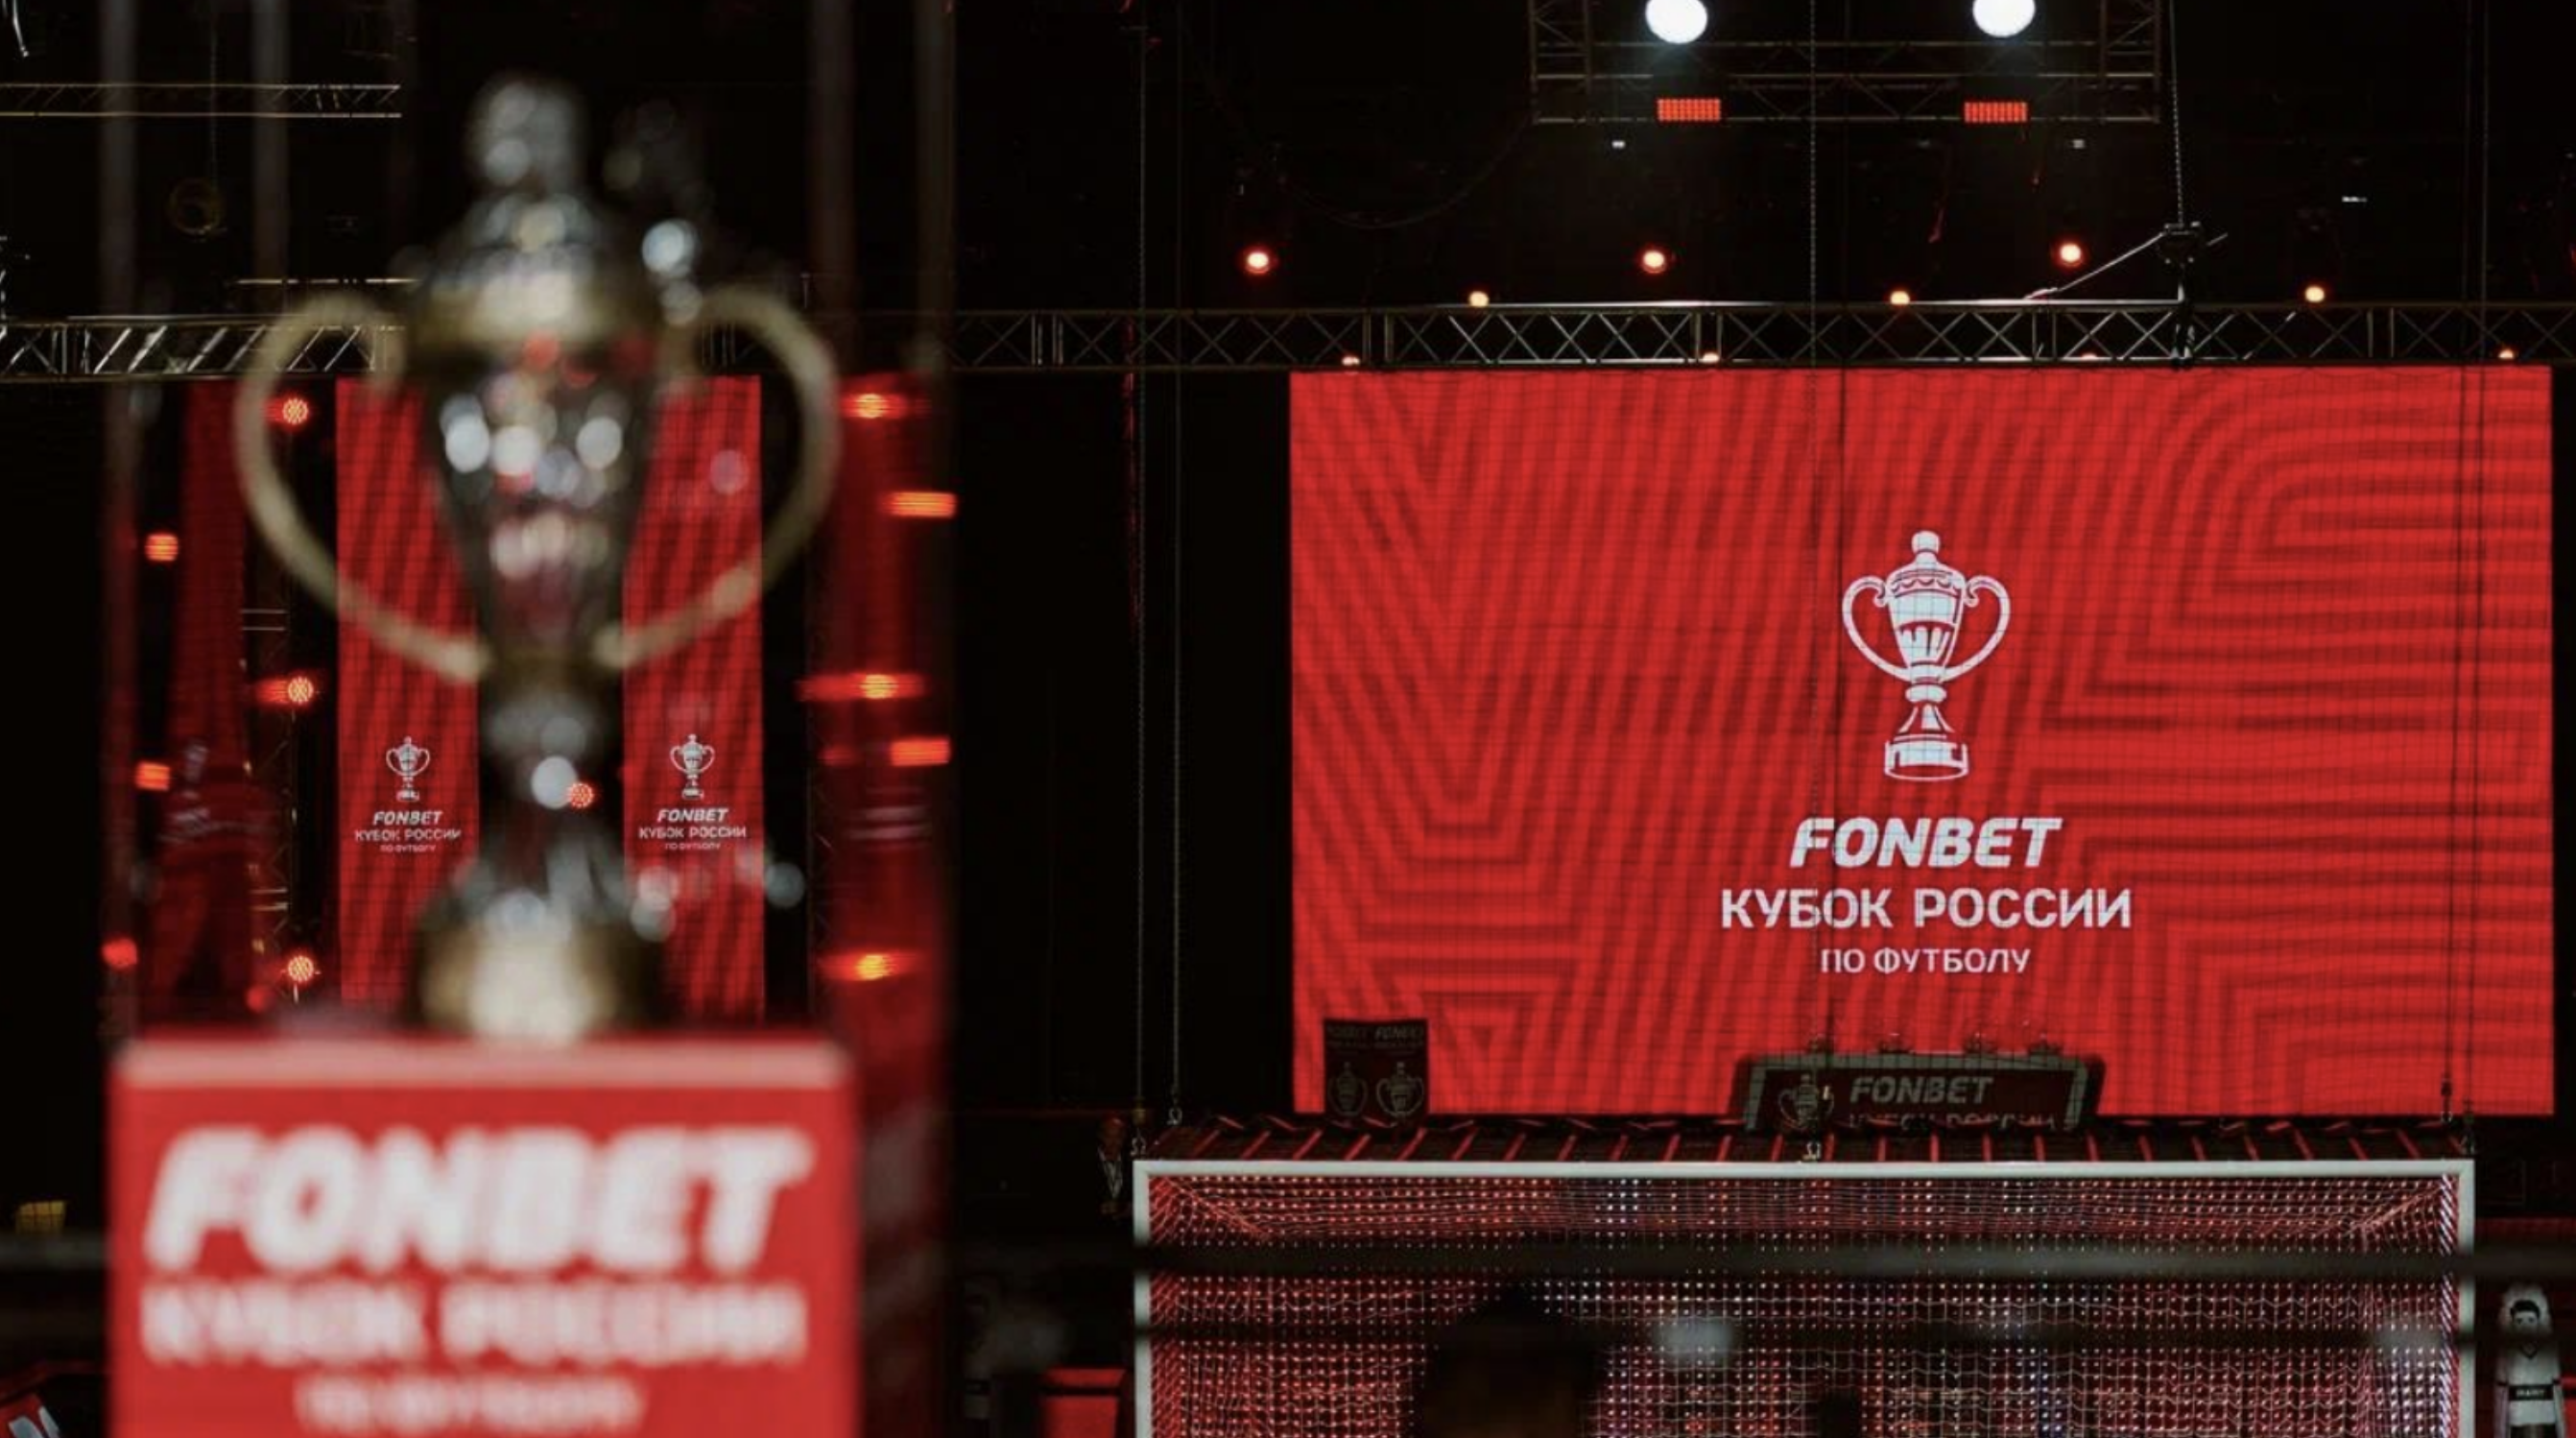 В декабре прошел Матч звезд Кубка России по футболу. За него «Фонбет» может получить сразу три статуэтки SBA